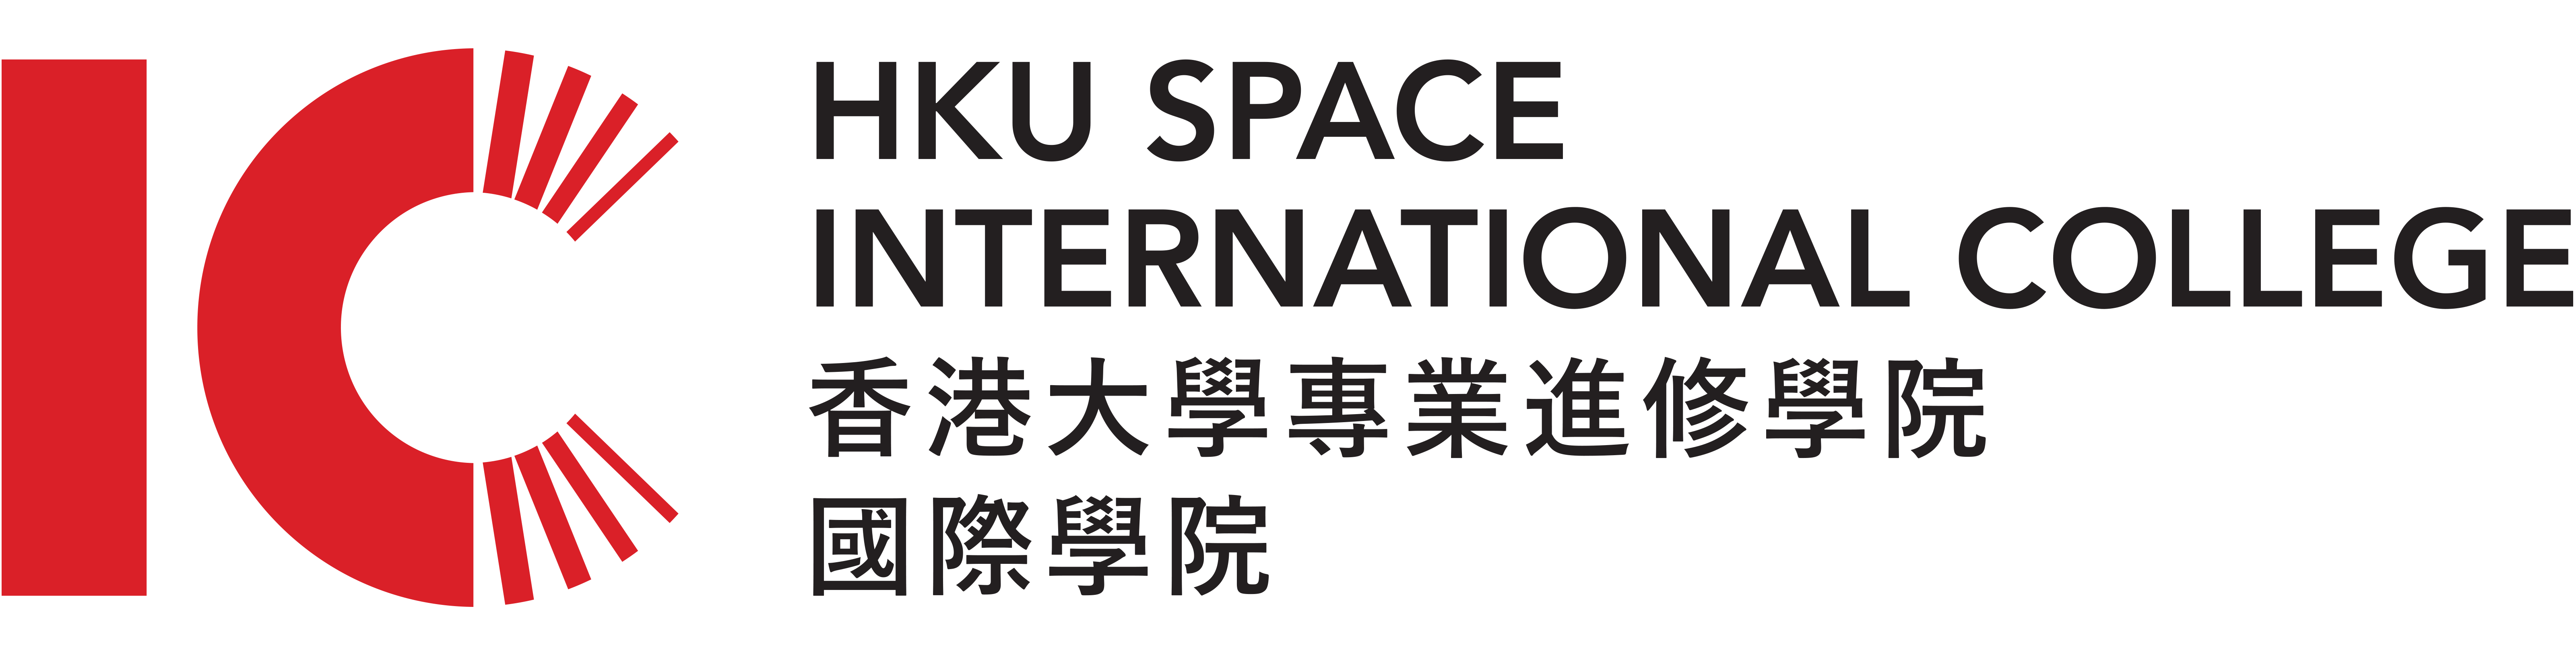 IC Logo - HKU SPACE IC logo.png